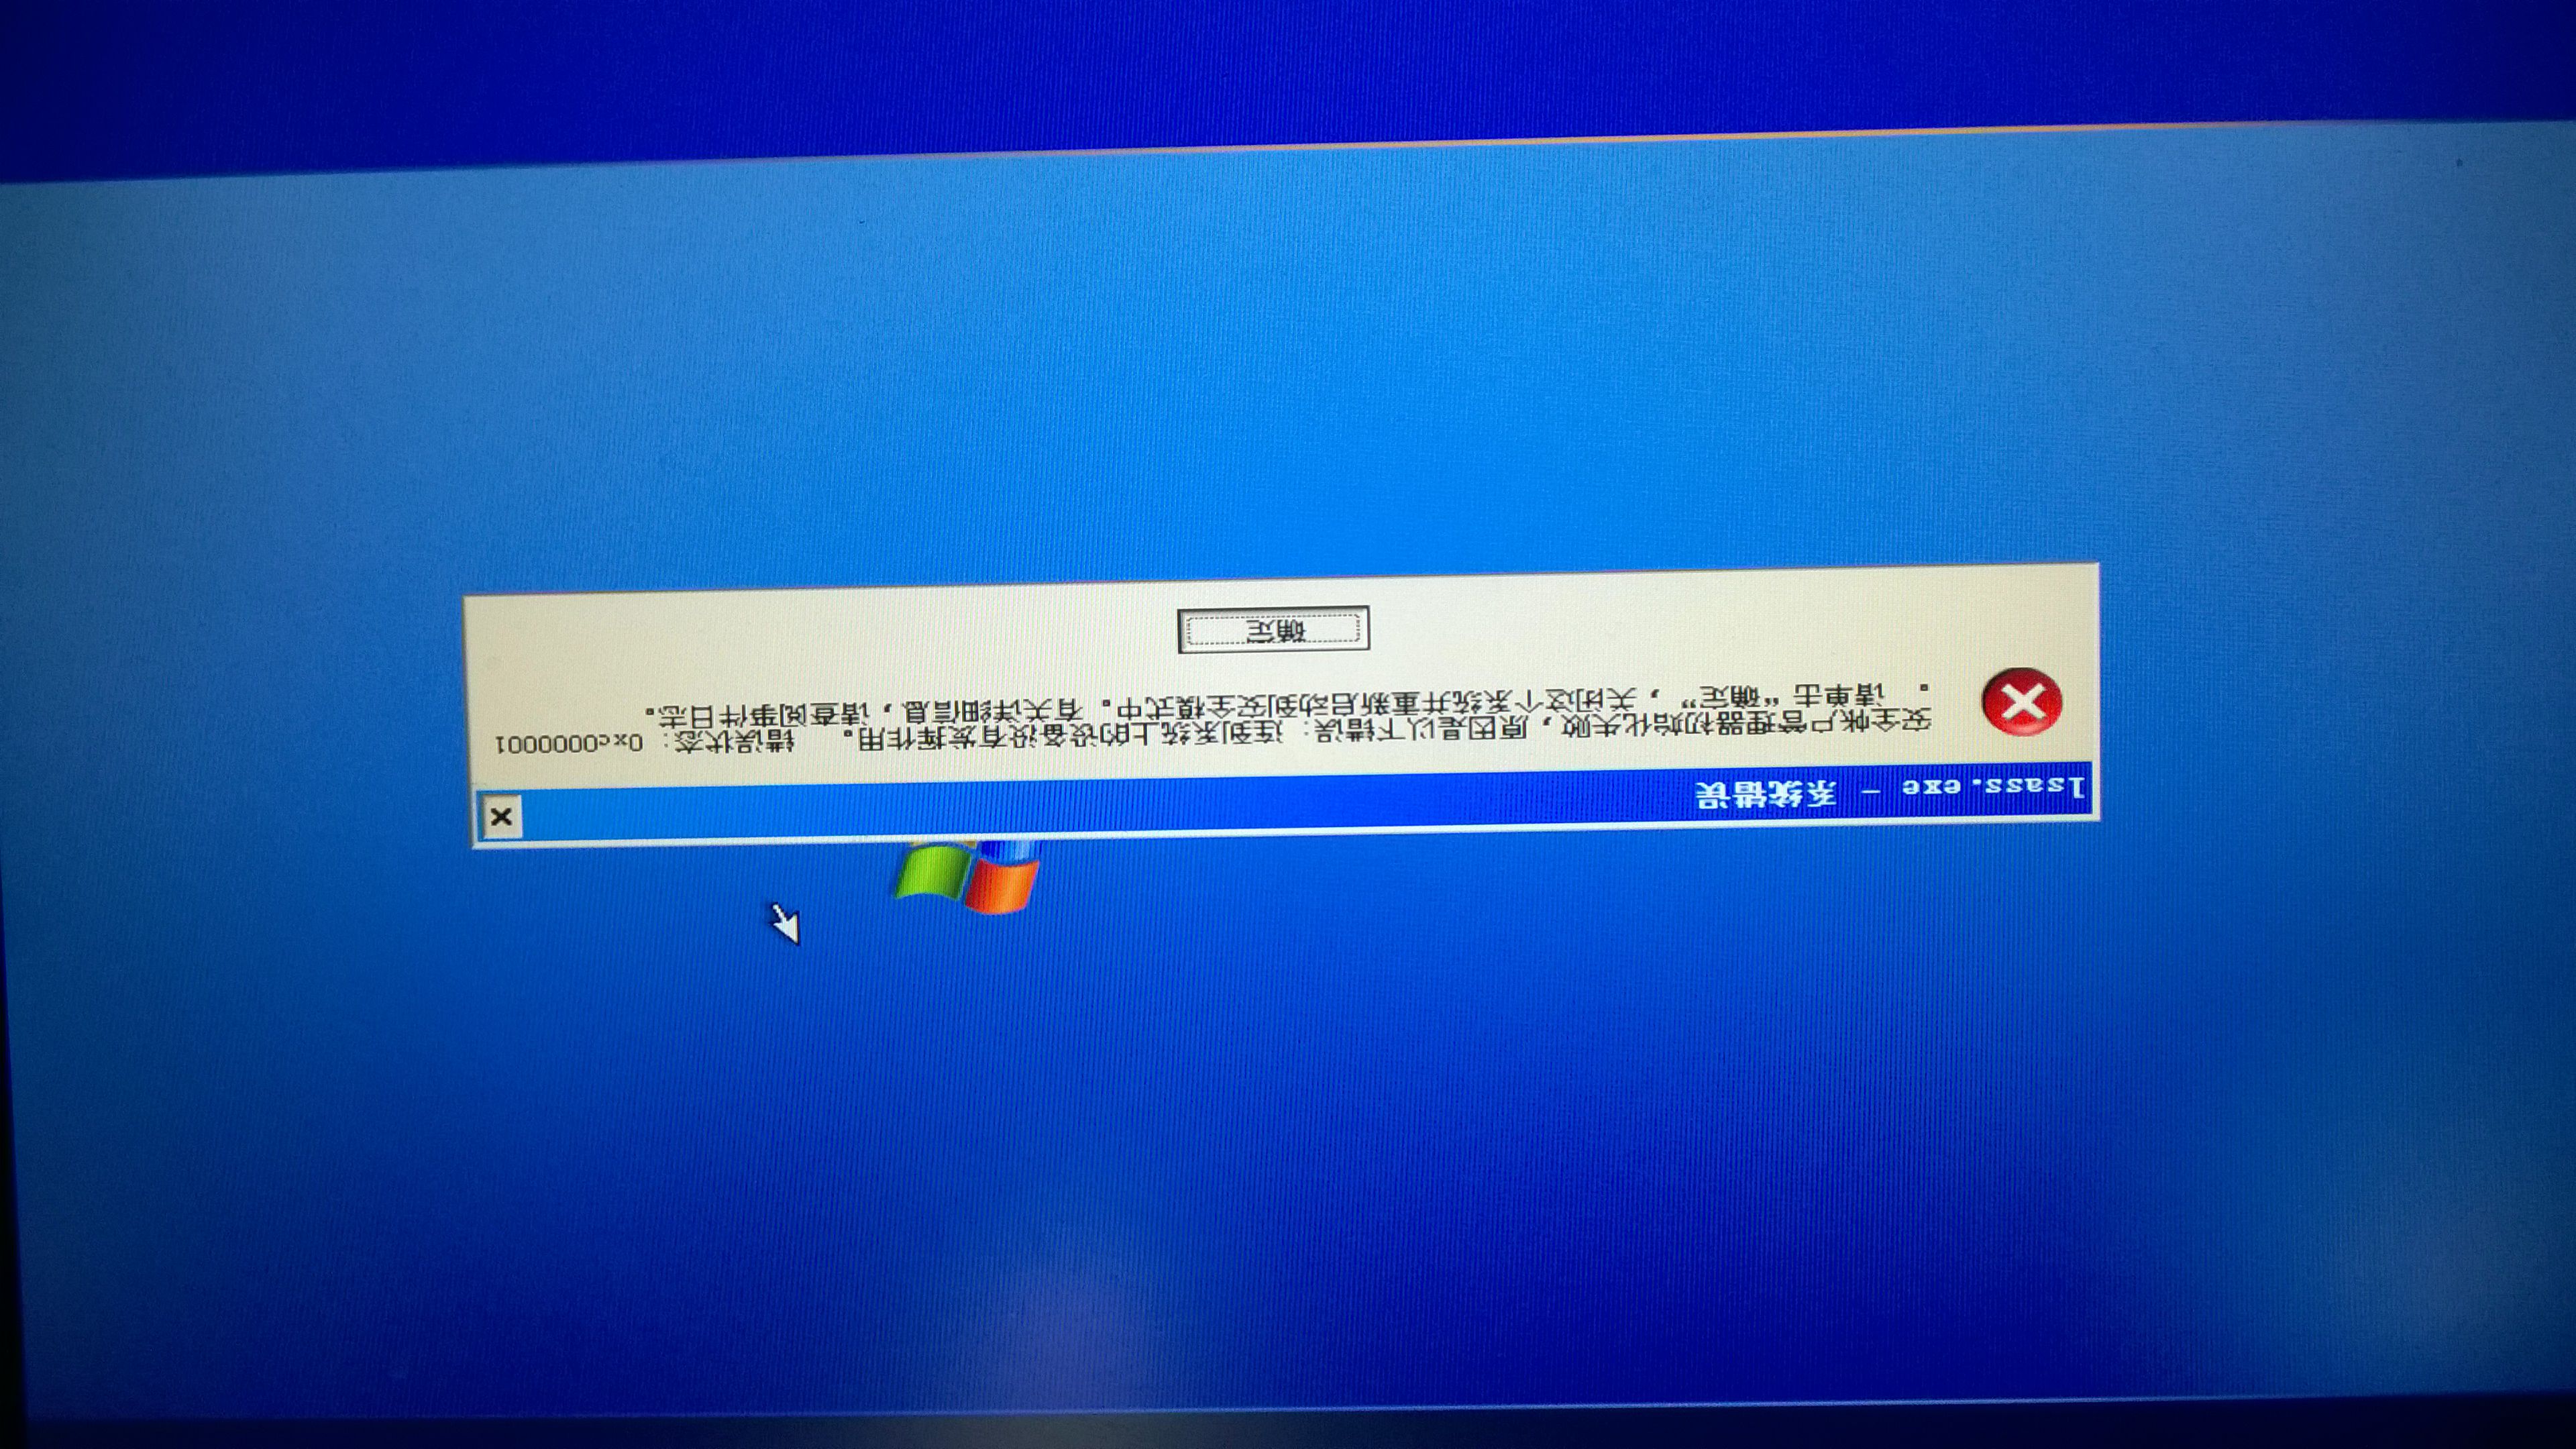 電腦不能啟動Windows，會說啟動失敗